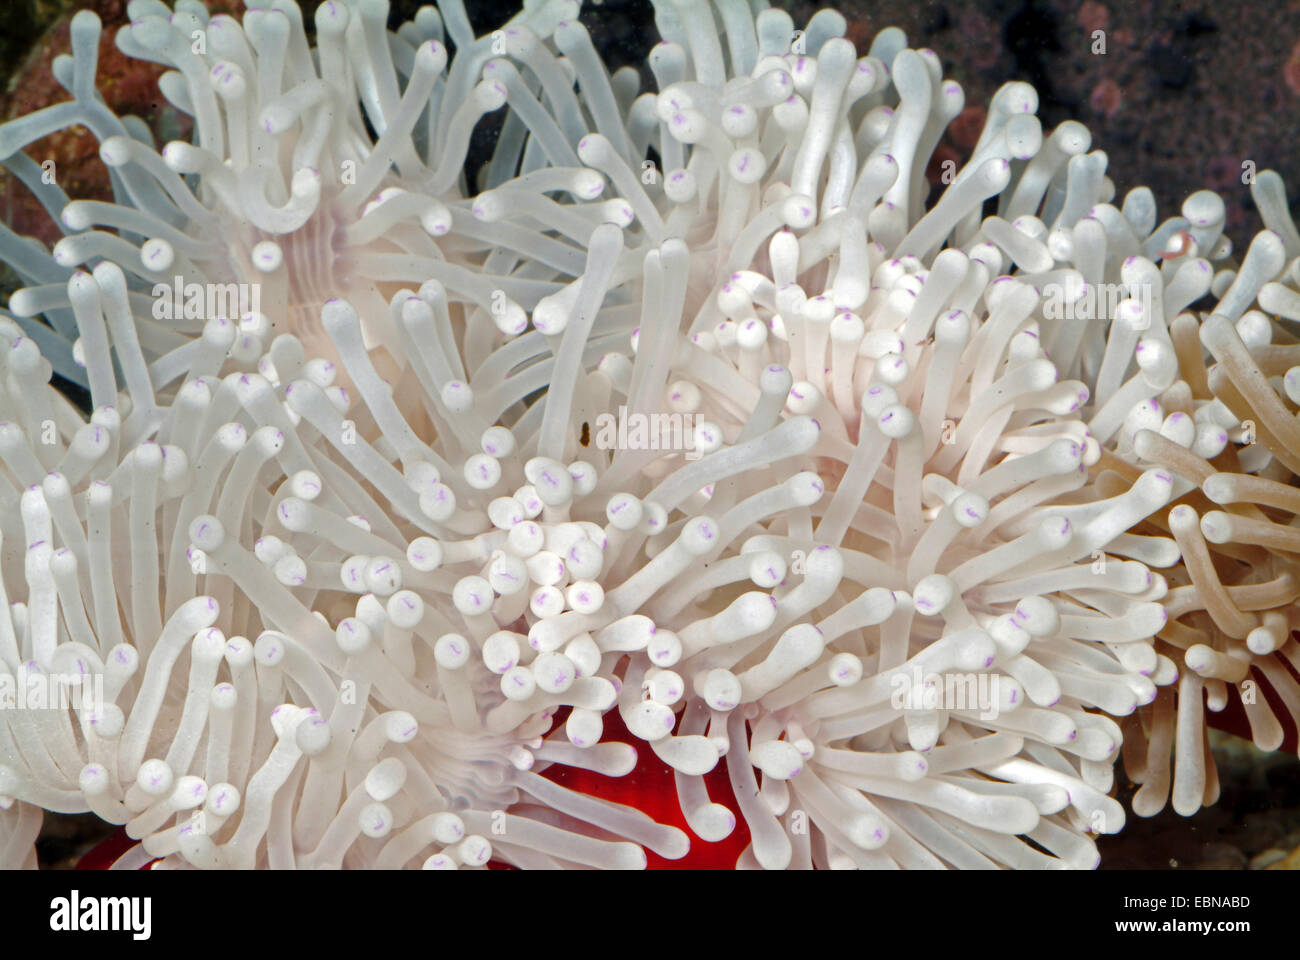 Magnifica anemone, magnifica anemone marittimo (Heteractis magnifica), ad alto angolo di visione su i tentacoli di un anemone magnifica Foto Stock